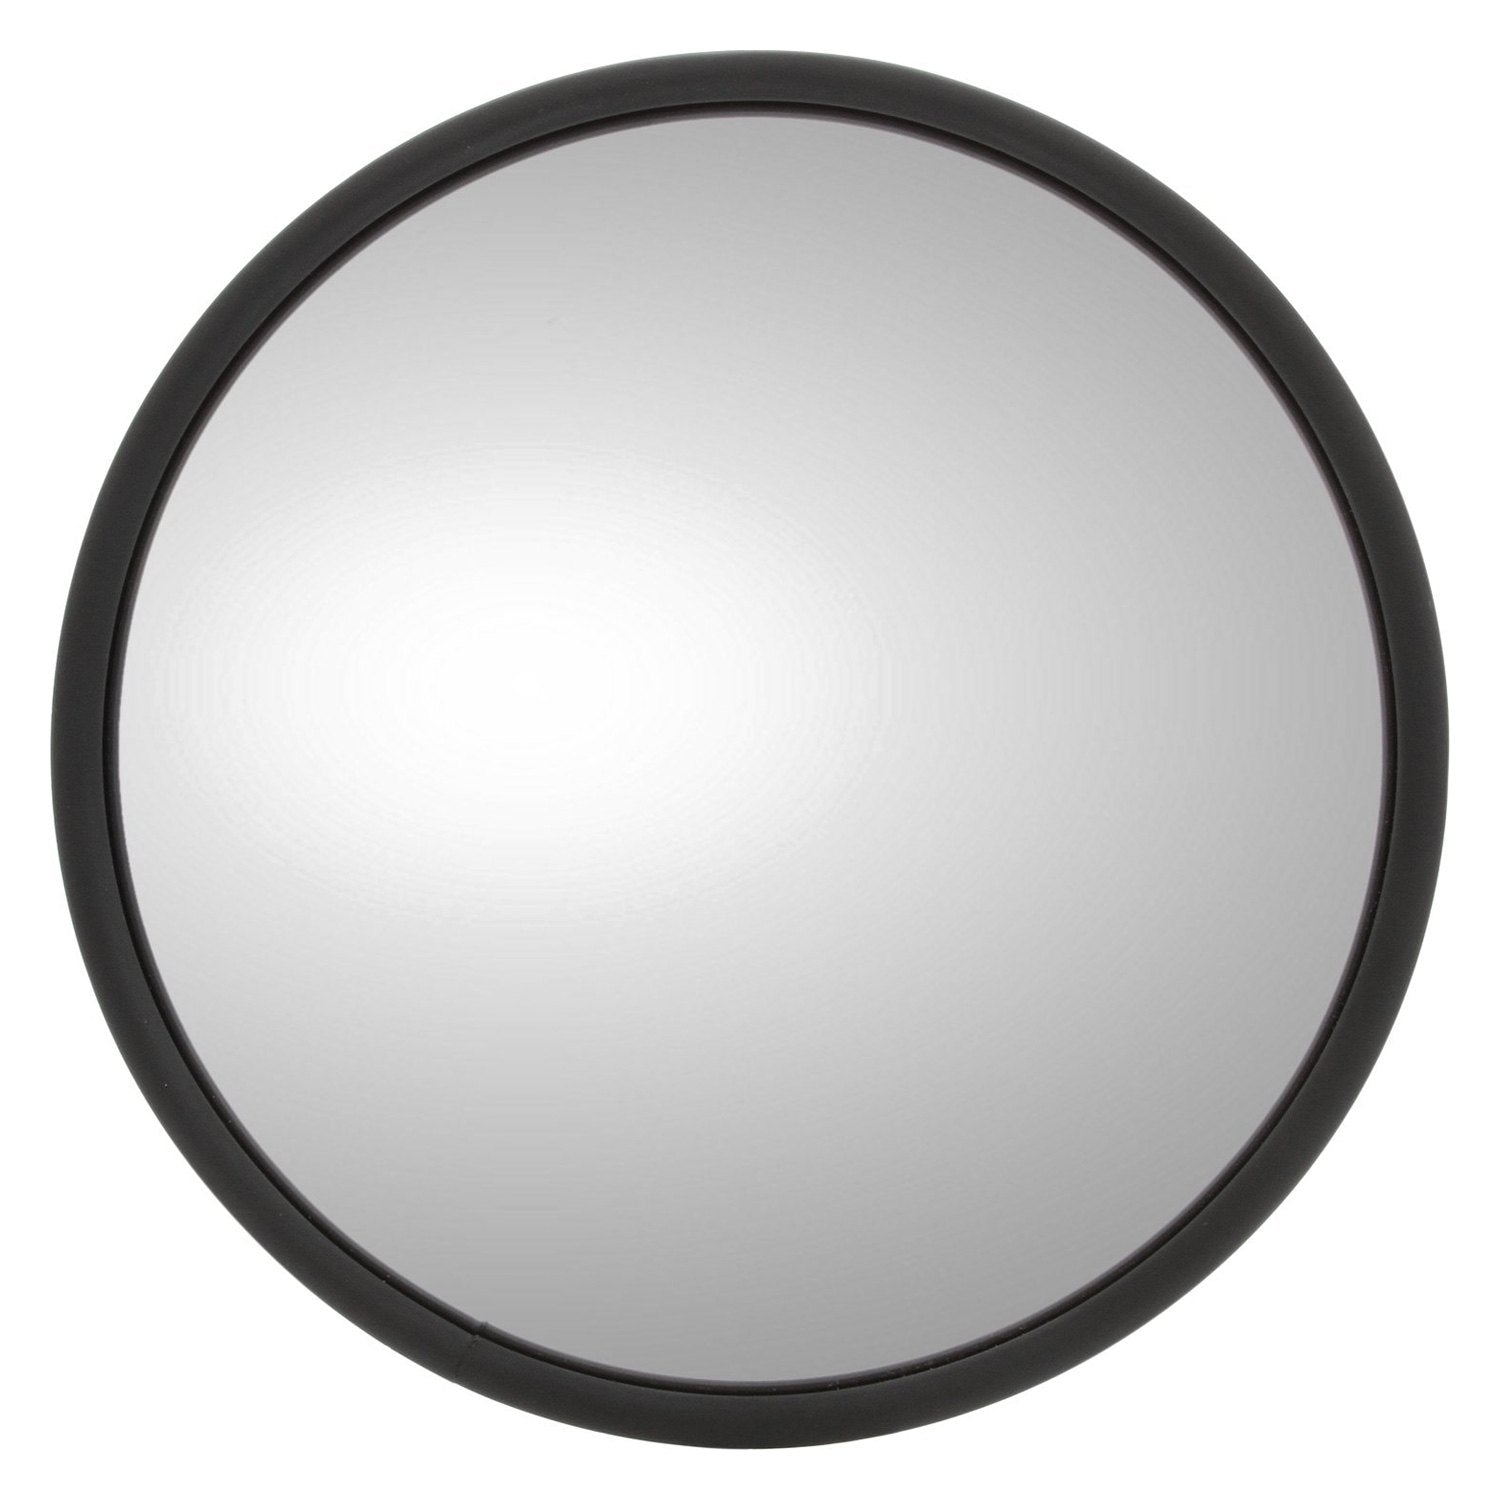 MRR CO37 K-Source Stick-On Blind Spot Mirror (Round, 3-3/4")